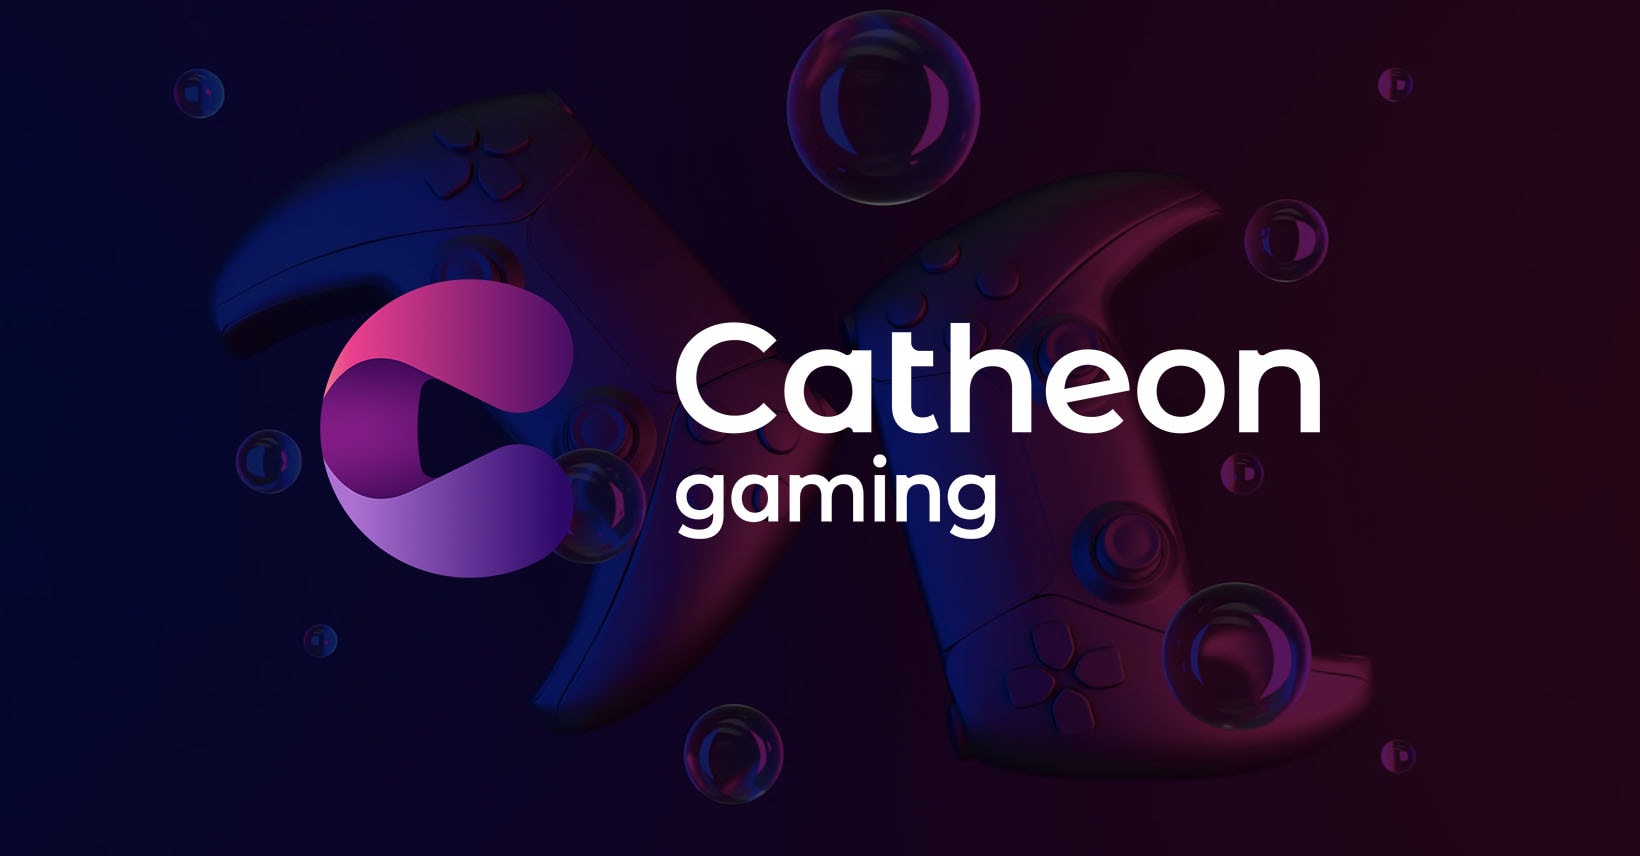 Catheon Gaming Mempunyai 25 Permainan Blockchain, 50 Juta Muat Turun, Dan Rancangan Besar